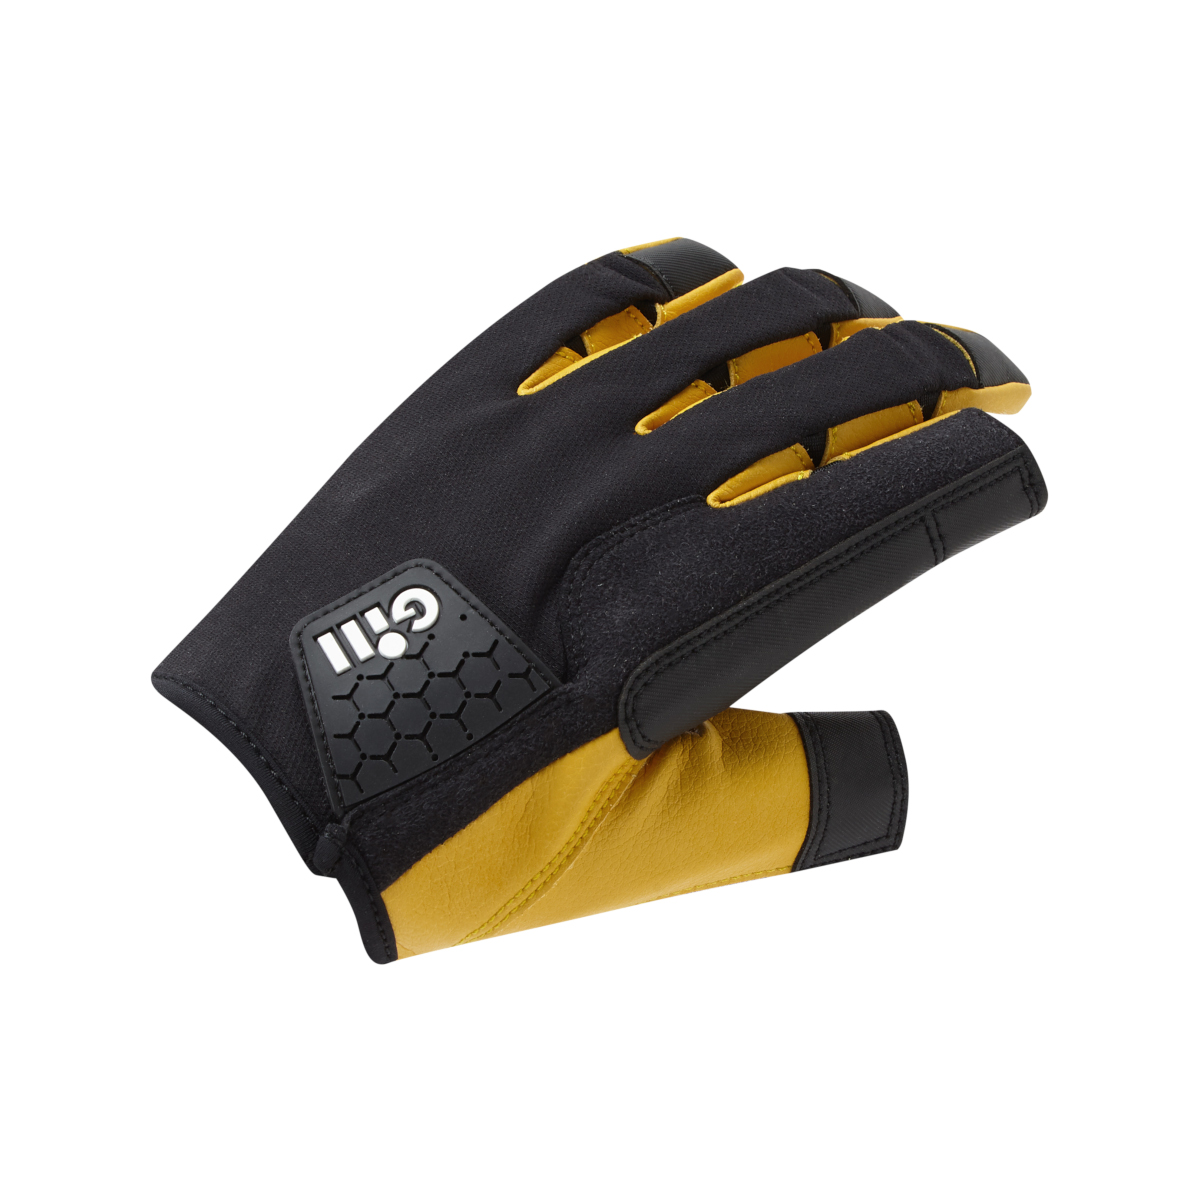 Gill Pro Gloves zeilhandschoenen gesloten vinger zwart, maat XL